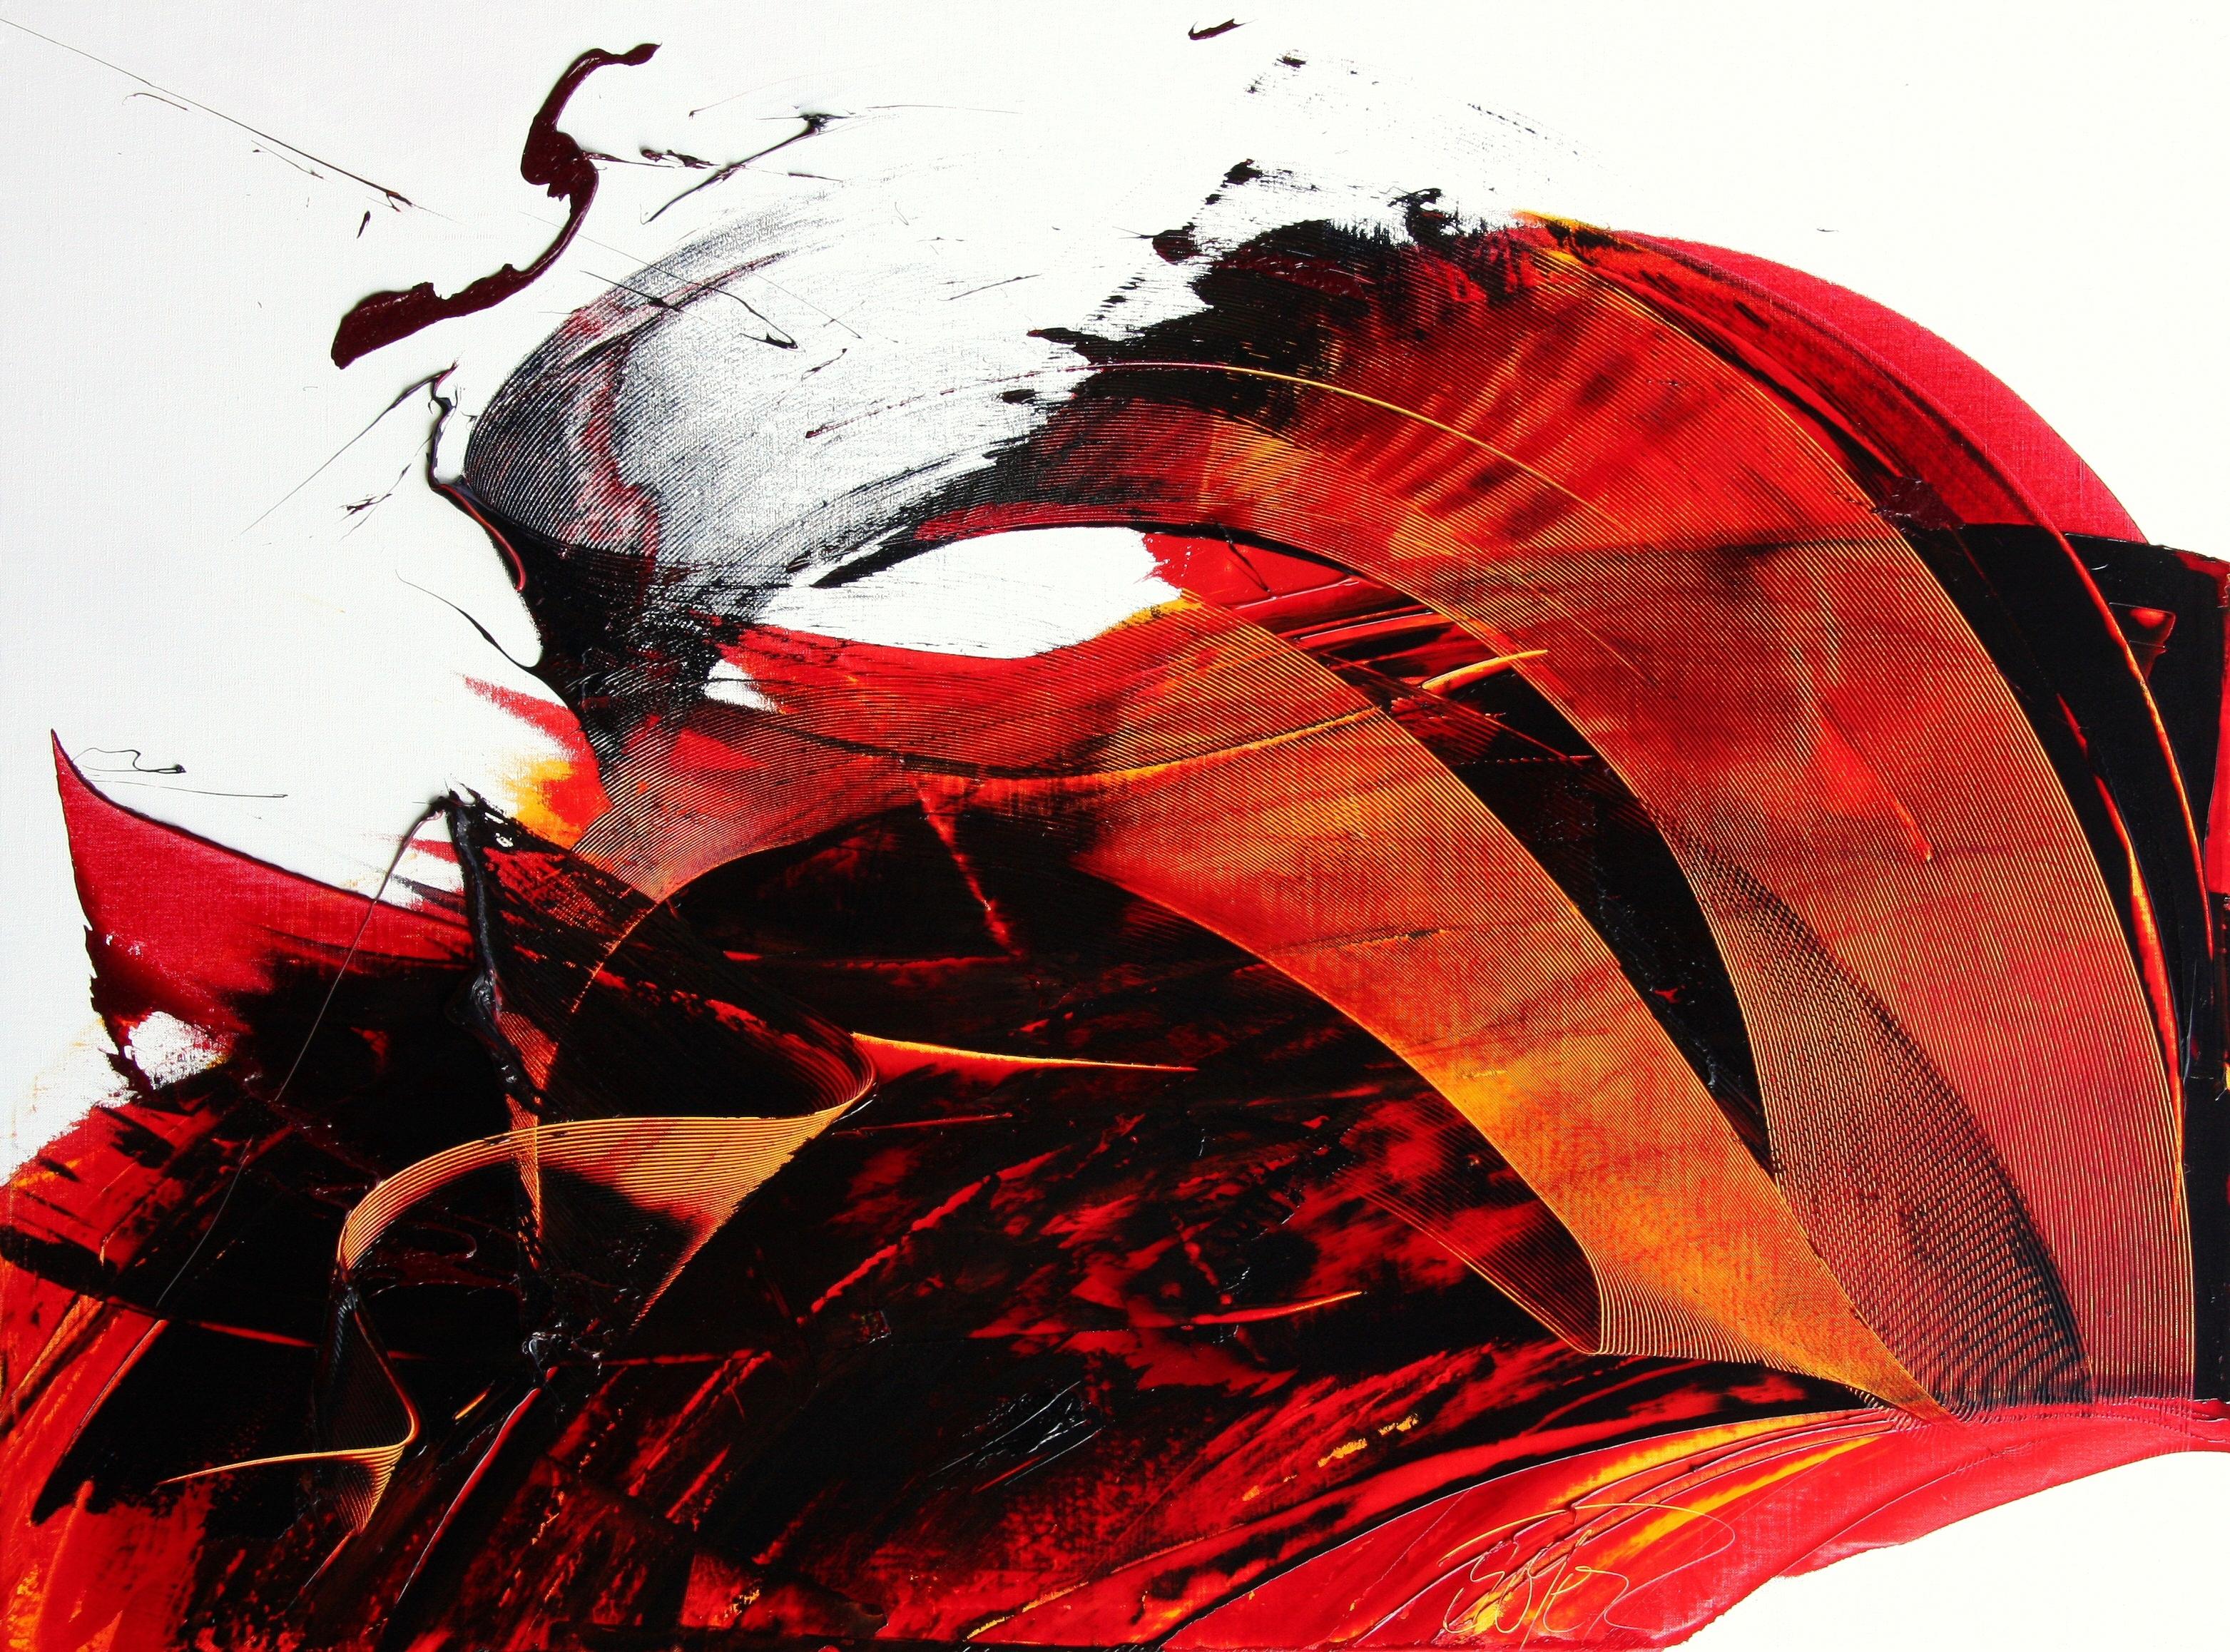 Abstract Painting Jean Soyer - Grande peinture à l'huile abstraite luminescente rouge foncé sur fond blanc